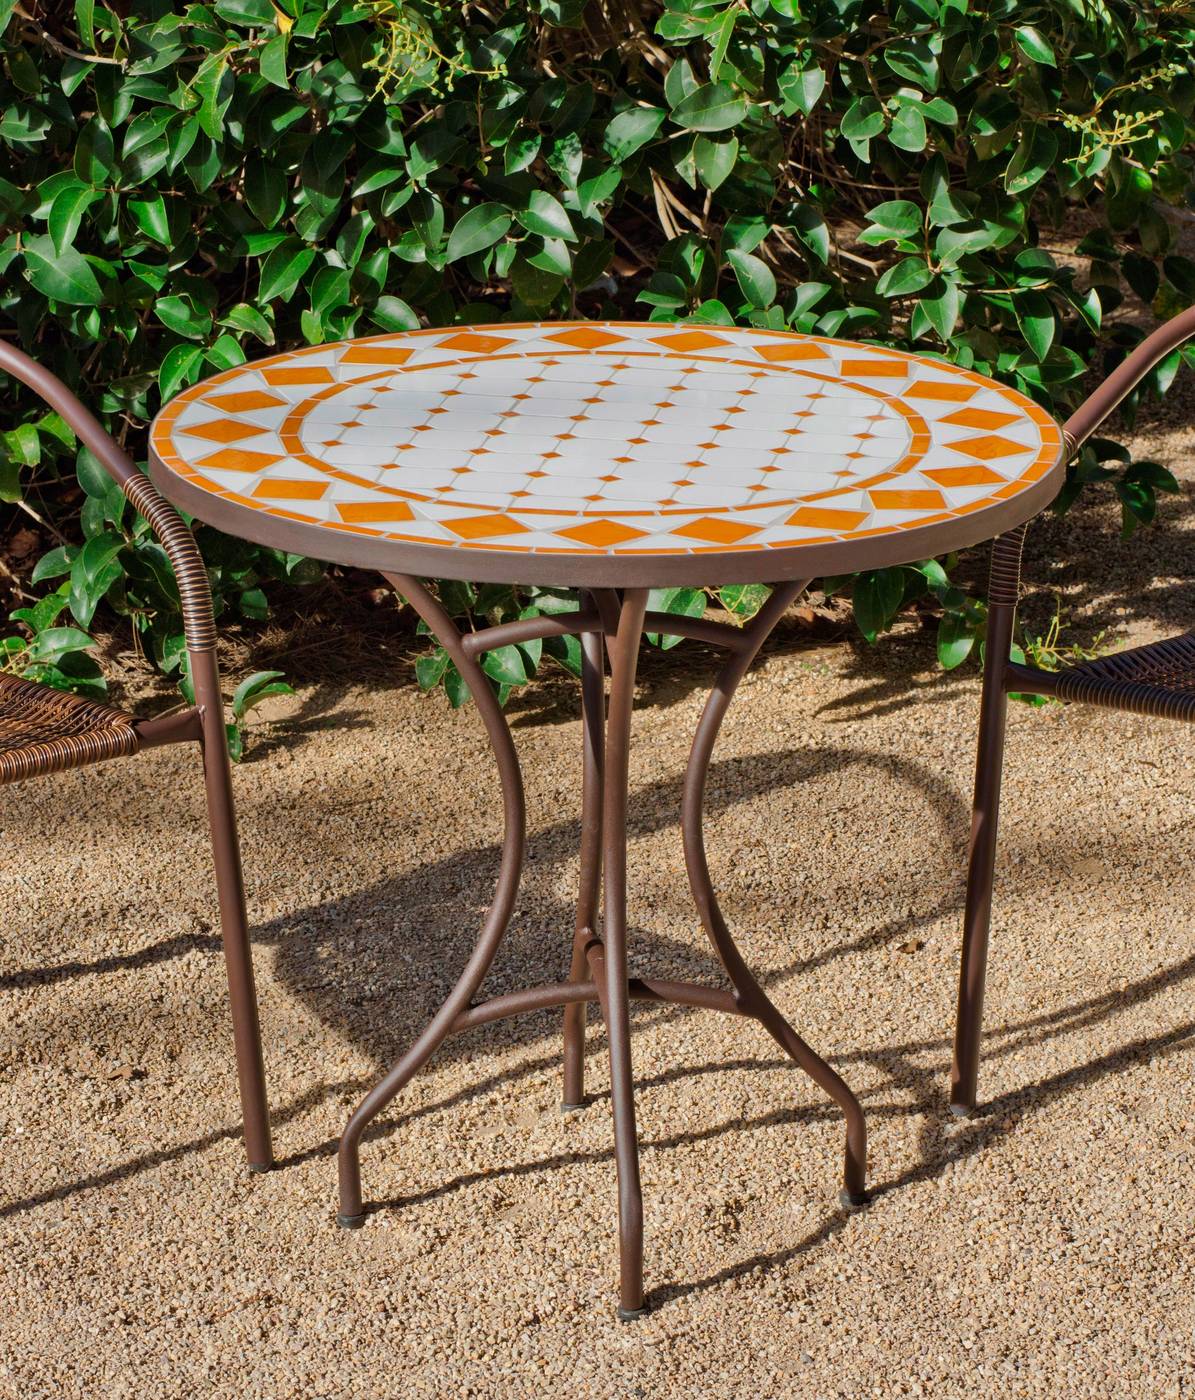 Conjunto Mosaico Salamanca-Brasil 70-4 - Conjunto para jardín y terraza de forja: 1 mesa con panel mosaico + 4 sillones de wicker reforzado